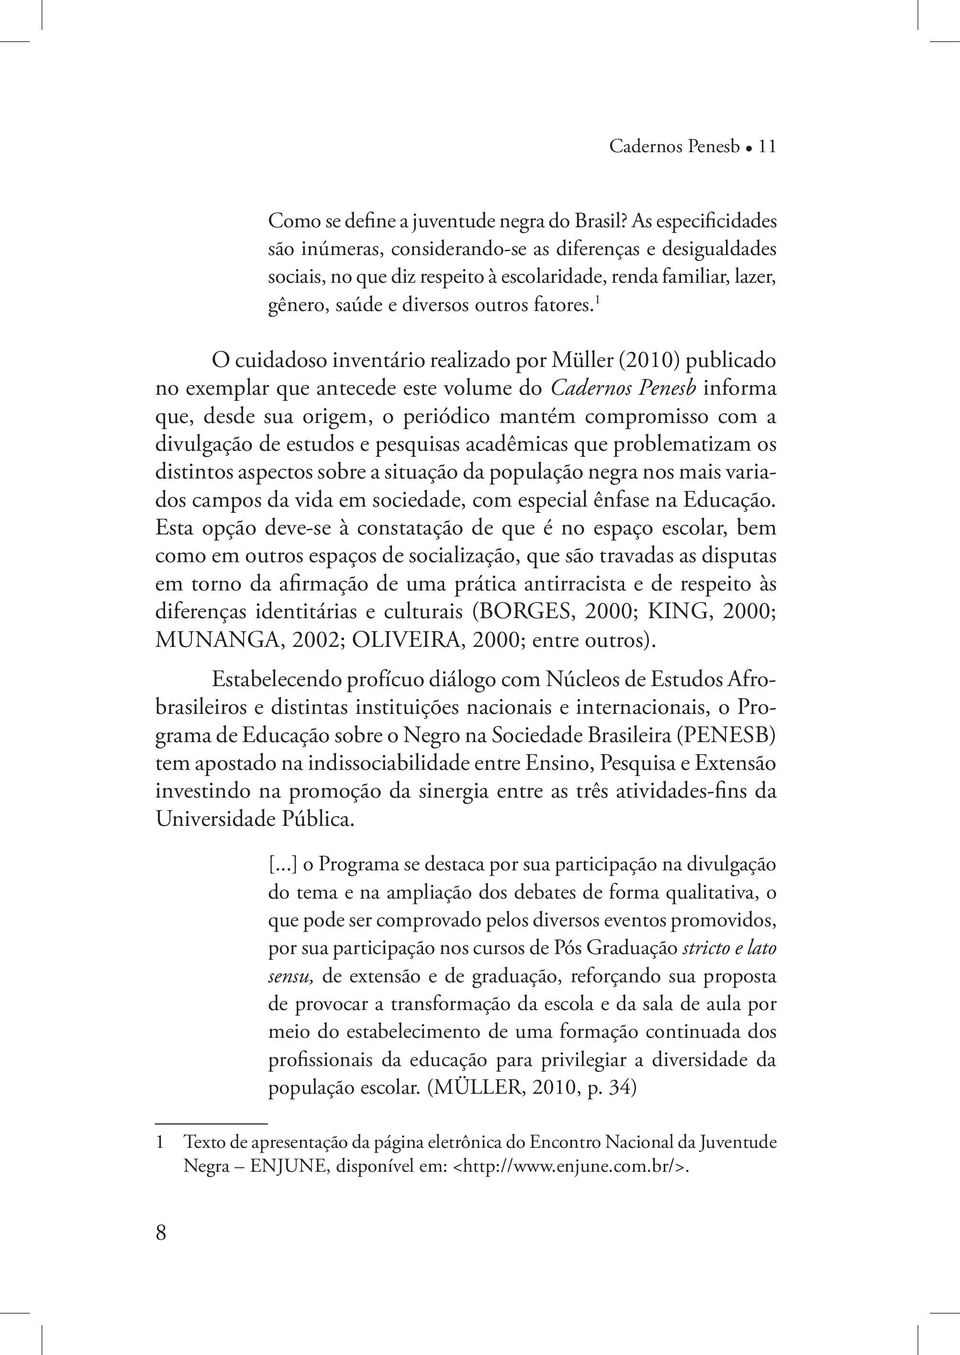 1 O cuidadoso inventário realizado por Müller (2010) publicado no exemplar que antecede este volume do Cadernos Penesb informa que, desde sua origem, o periódico mantém compromisso com a divulgação